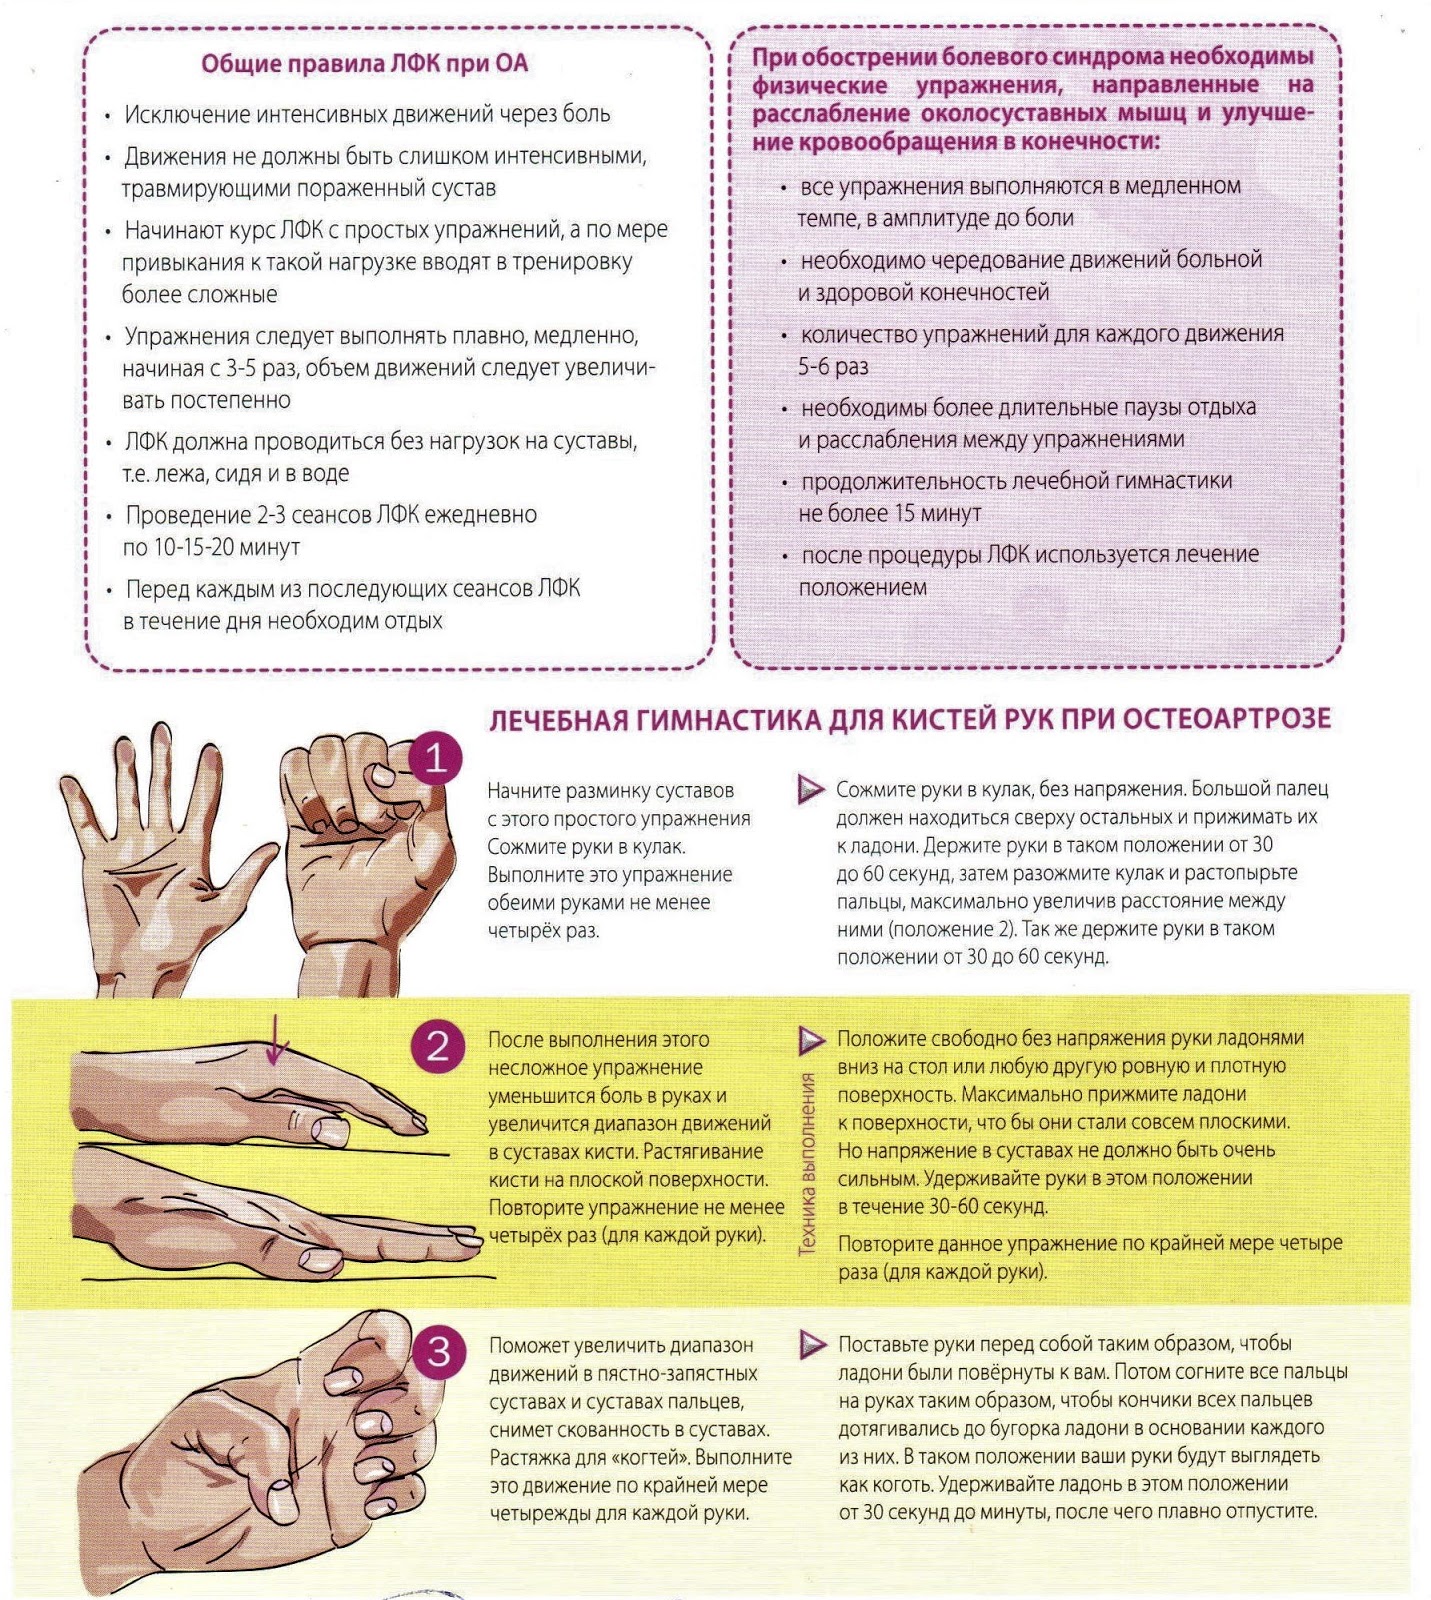 Немеют пальцы рук какой врач. Лечебная гимнастика для кистей рук при остеоартрозе. ЛФК при туннельном синдроме лучезапястного сустава руки. Туннельный синдром запястья упражнения. Упражнения для рук при тонельном синдроме.